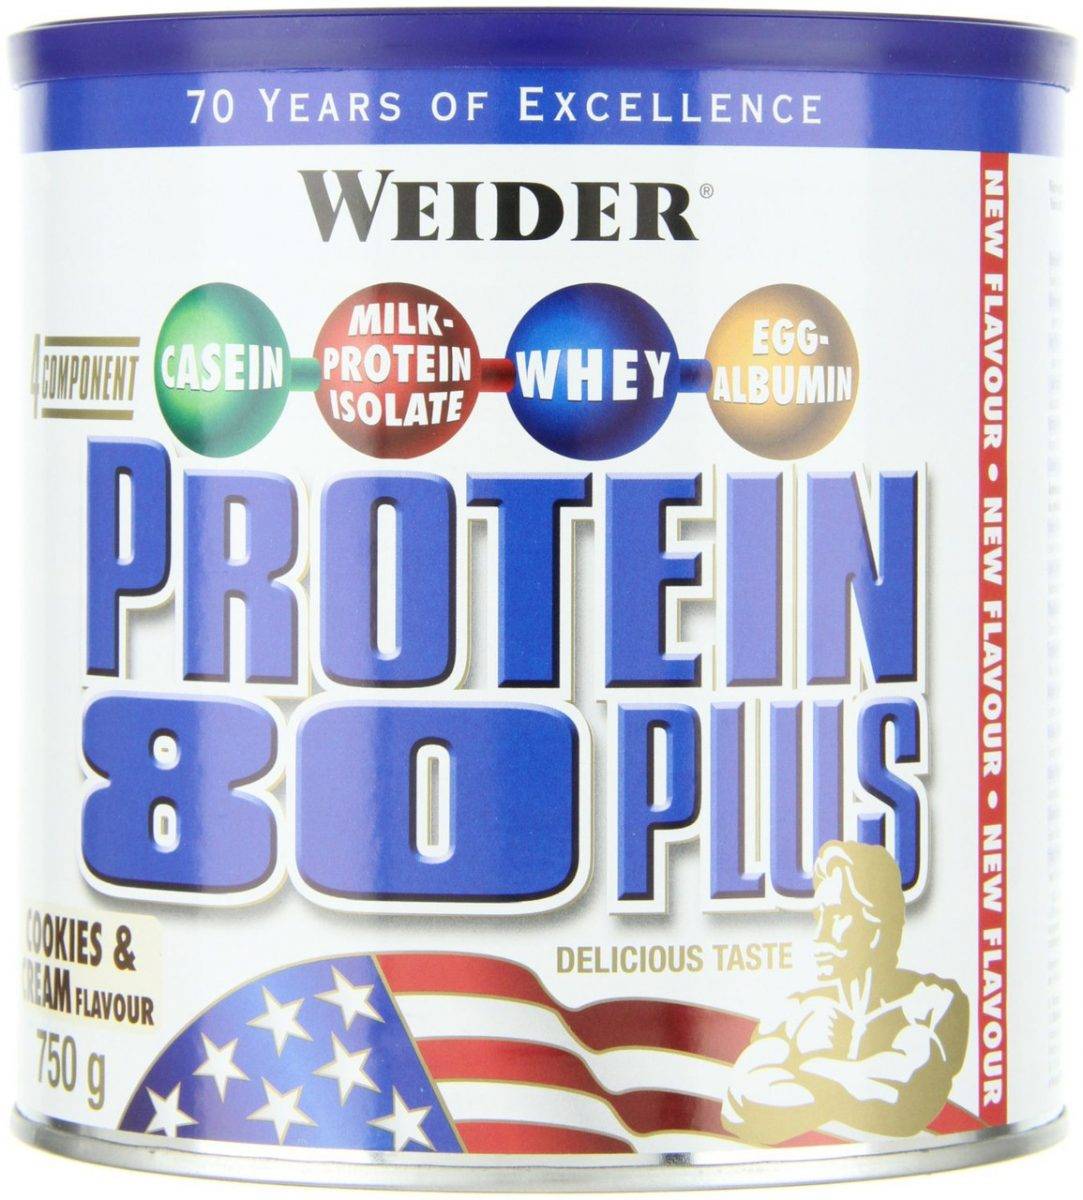 Protein 80 plus от weider: как принимать, состав, отзывы